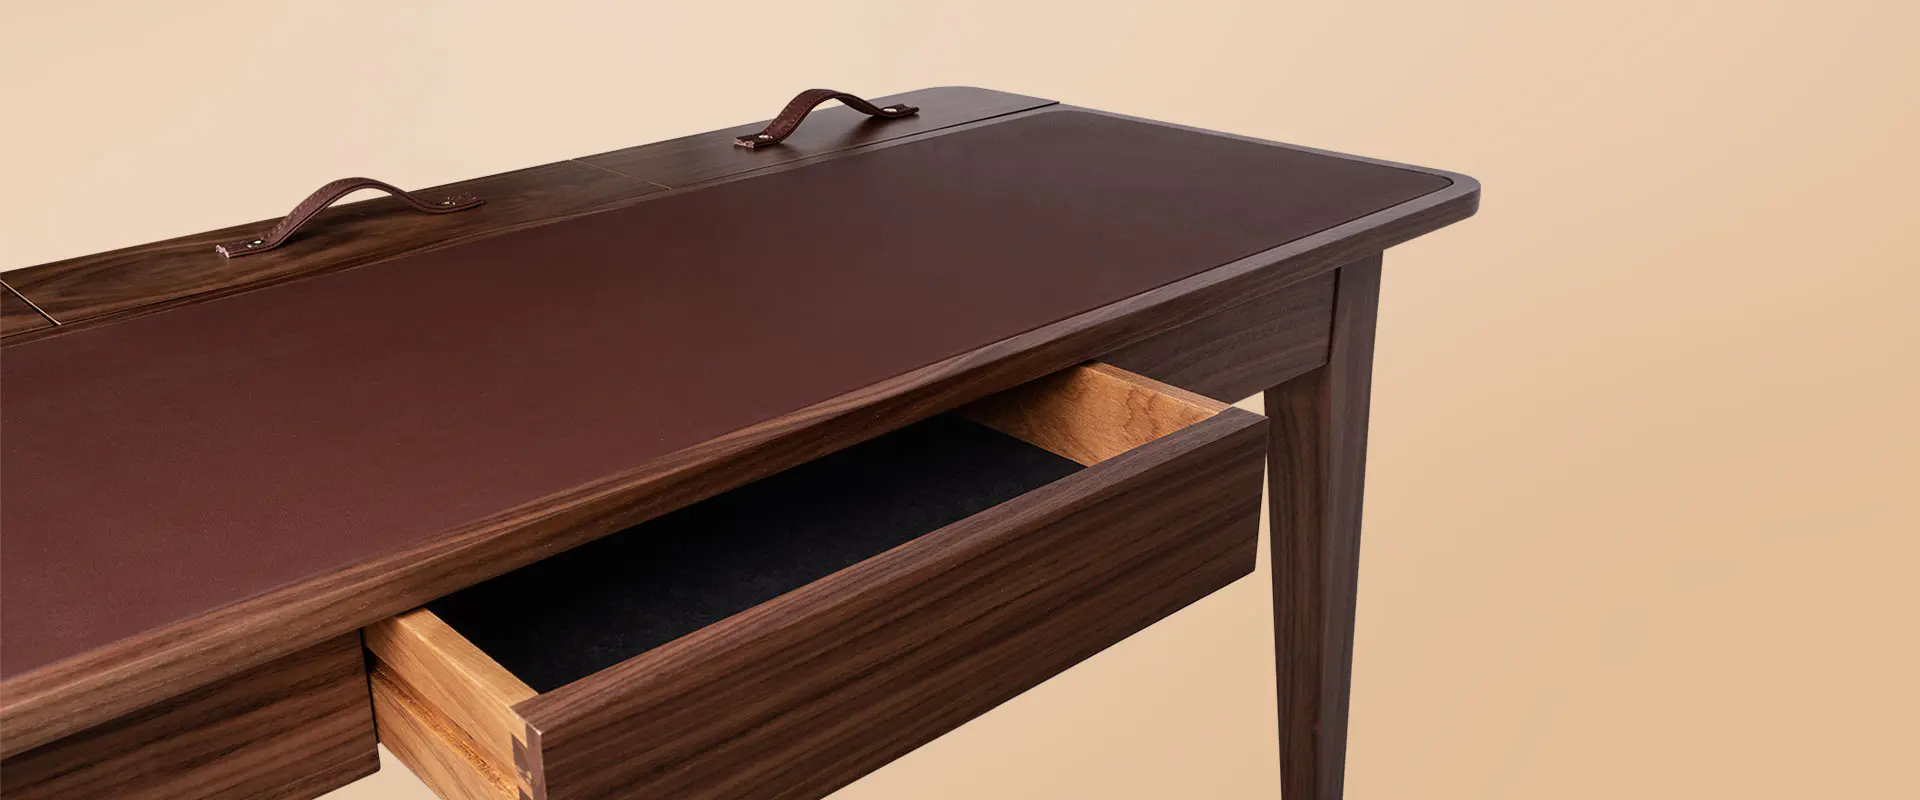 Kipling Desk detail